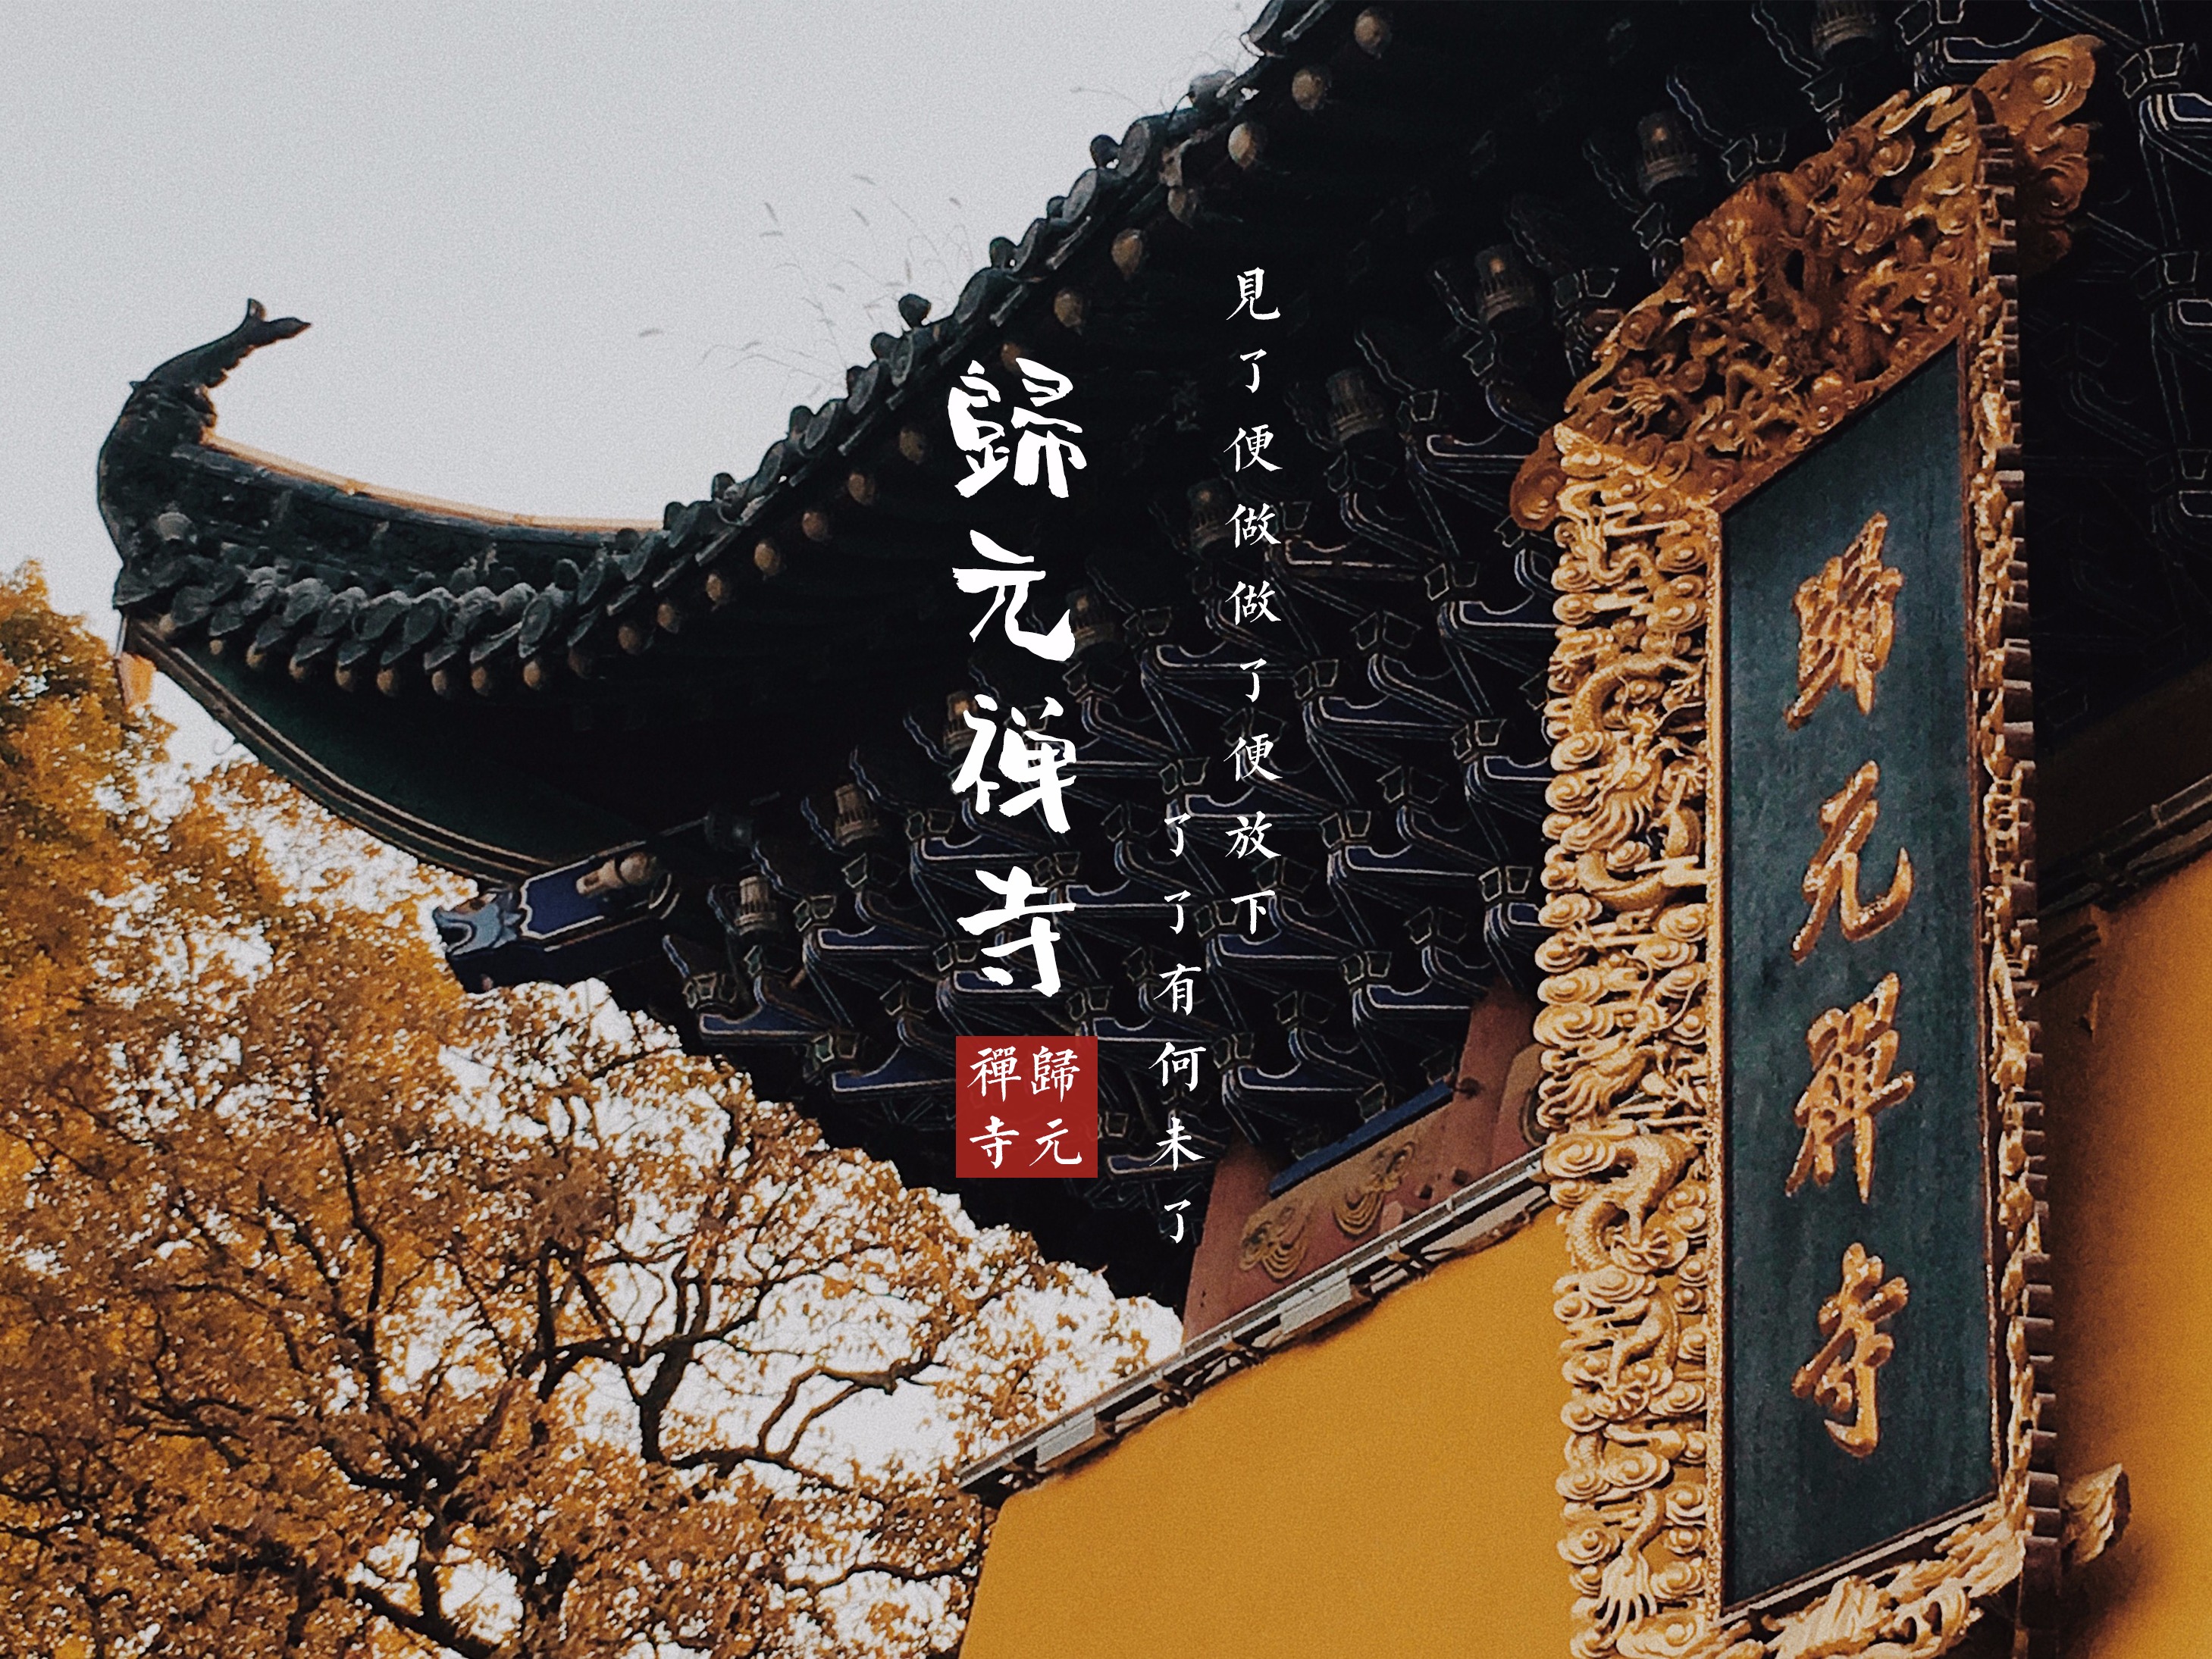 【携程攻略】杭州南屏晚钟景点,净慈禅寺是西湖周围第二大名刹。已有一千多年的历史，寺院与济公活佛…